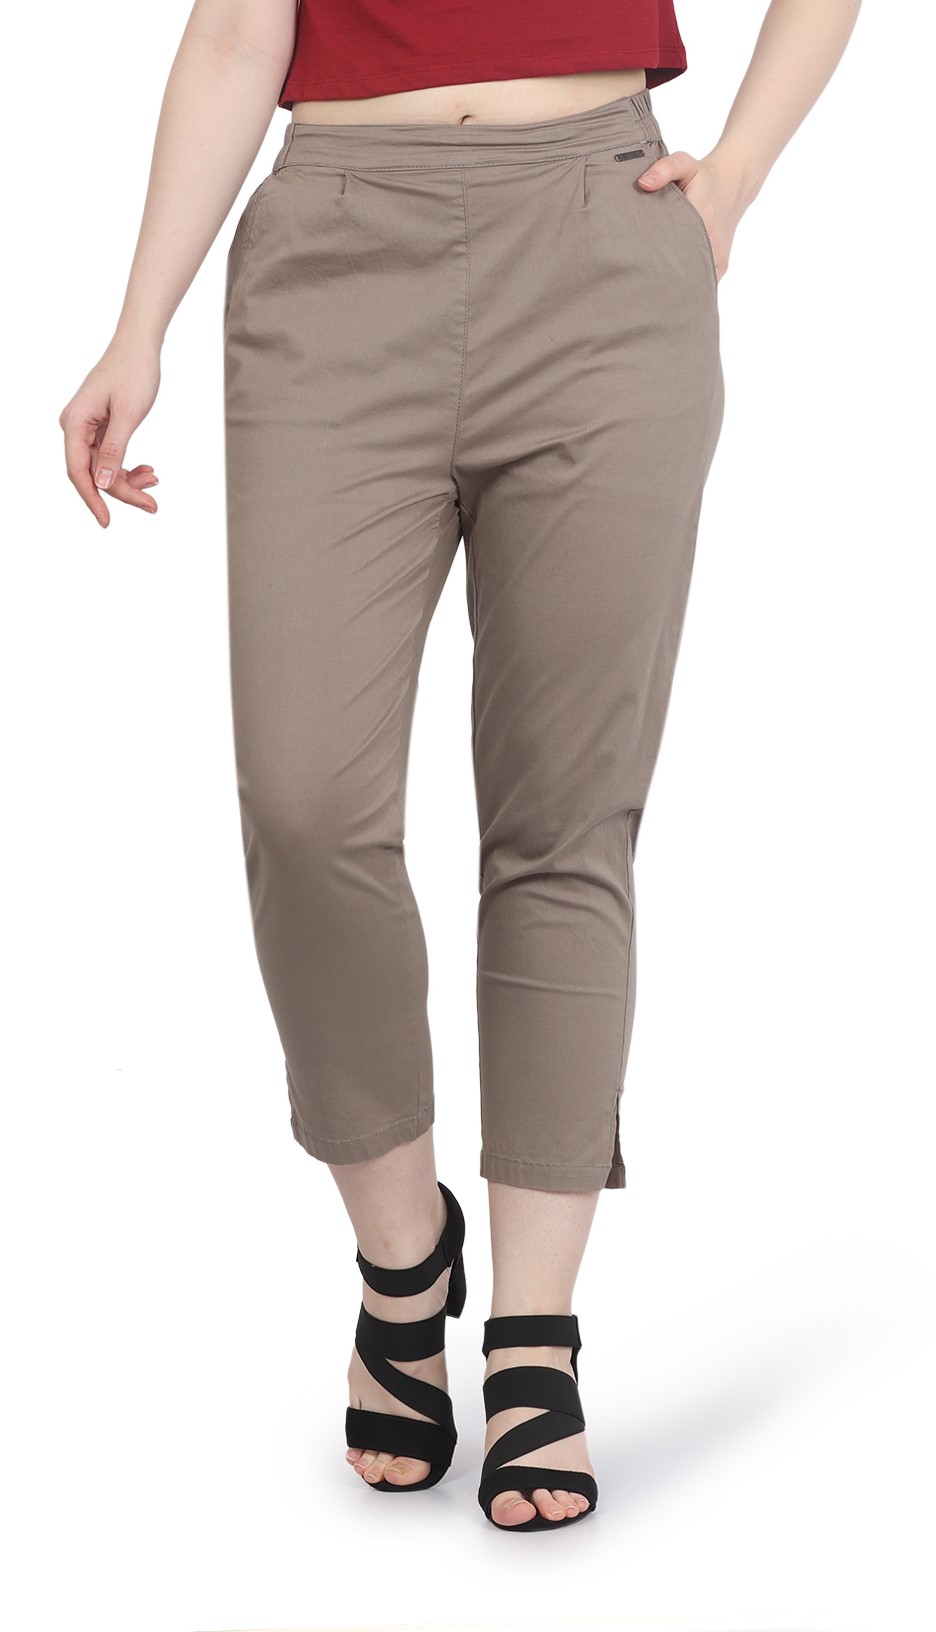 Cotton Slub Ankle Length Pants in 8 colors DY5255